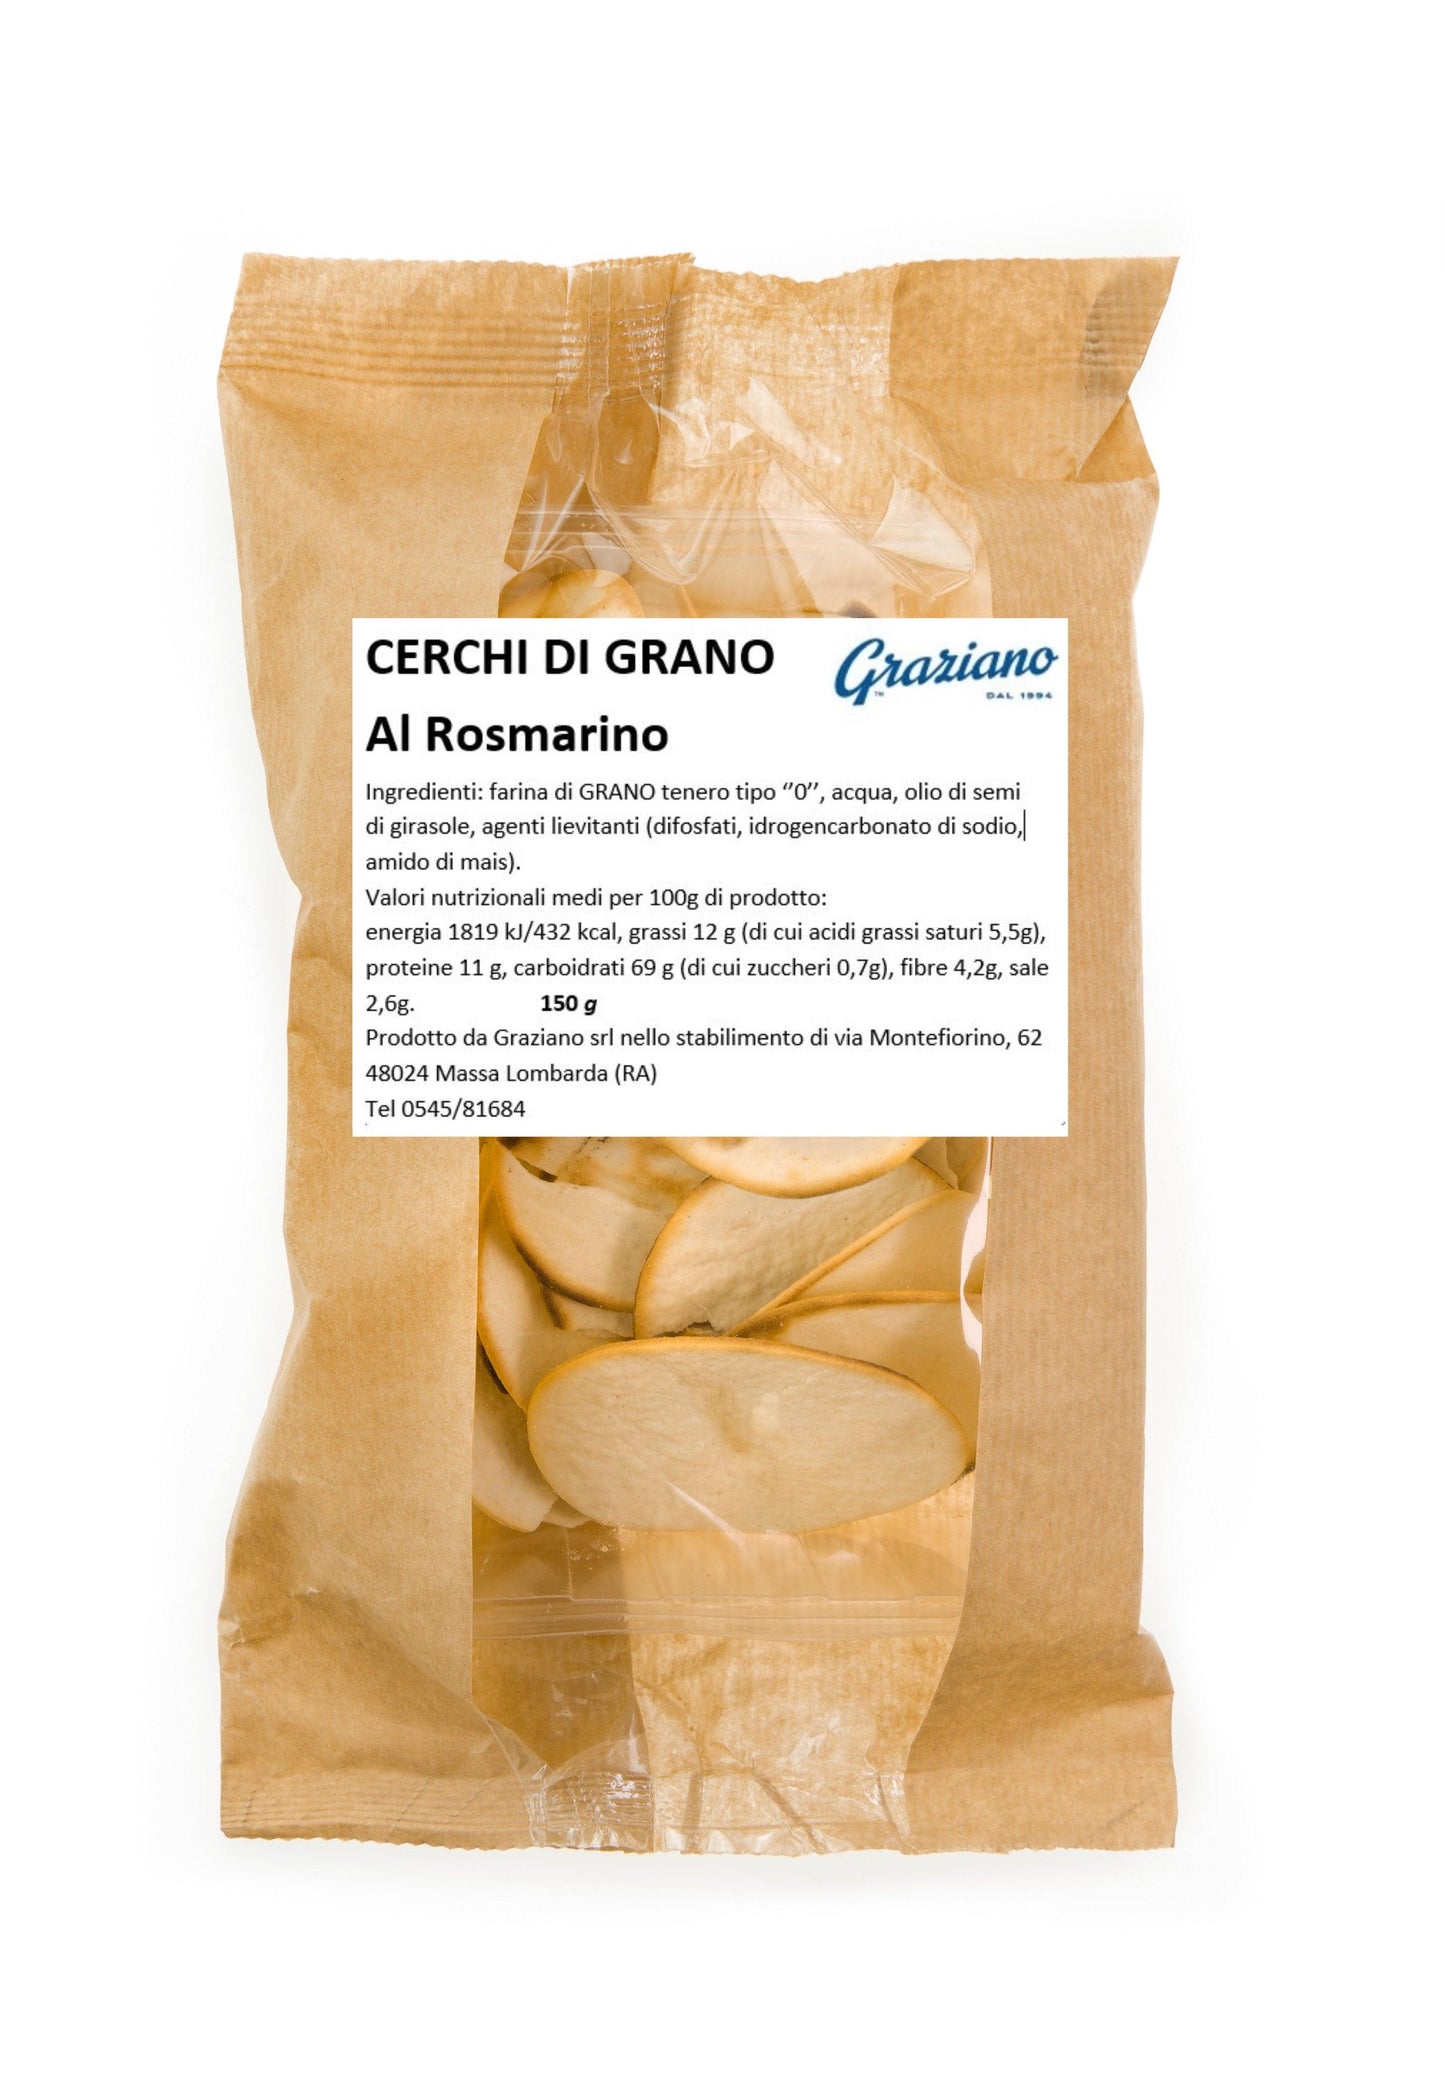 Cerchi di grano al rosmarino - I migliori prodotti Made in Italy da Fiera di Monza Shop - Solo 16.50€! Acquista subito su Fiera di Monza Shop!